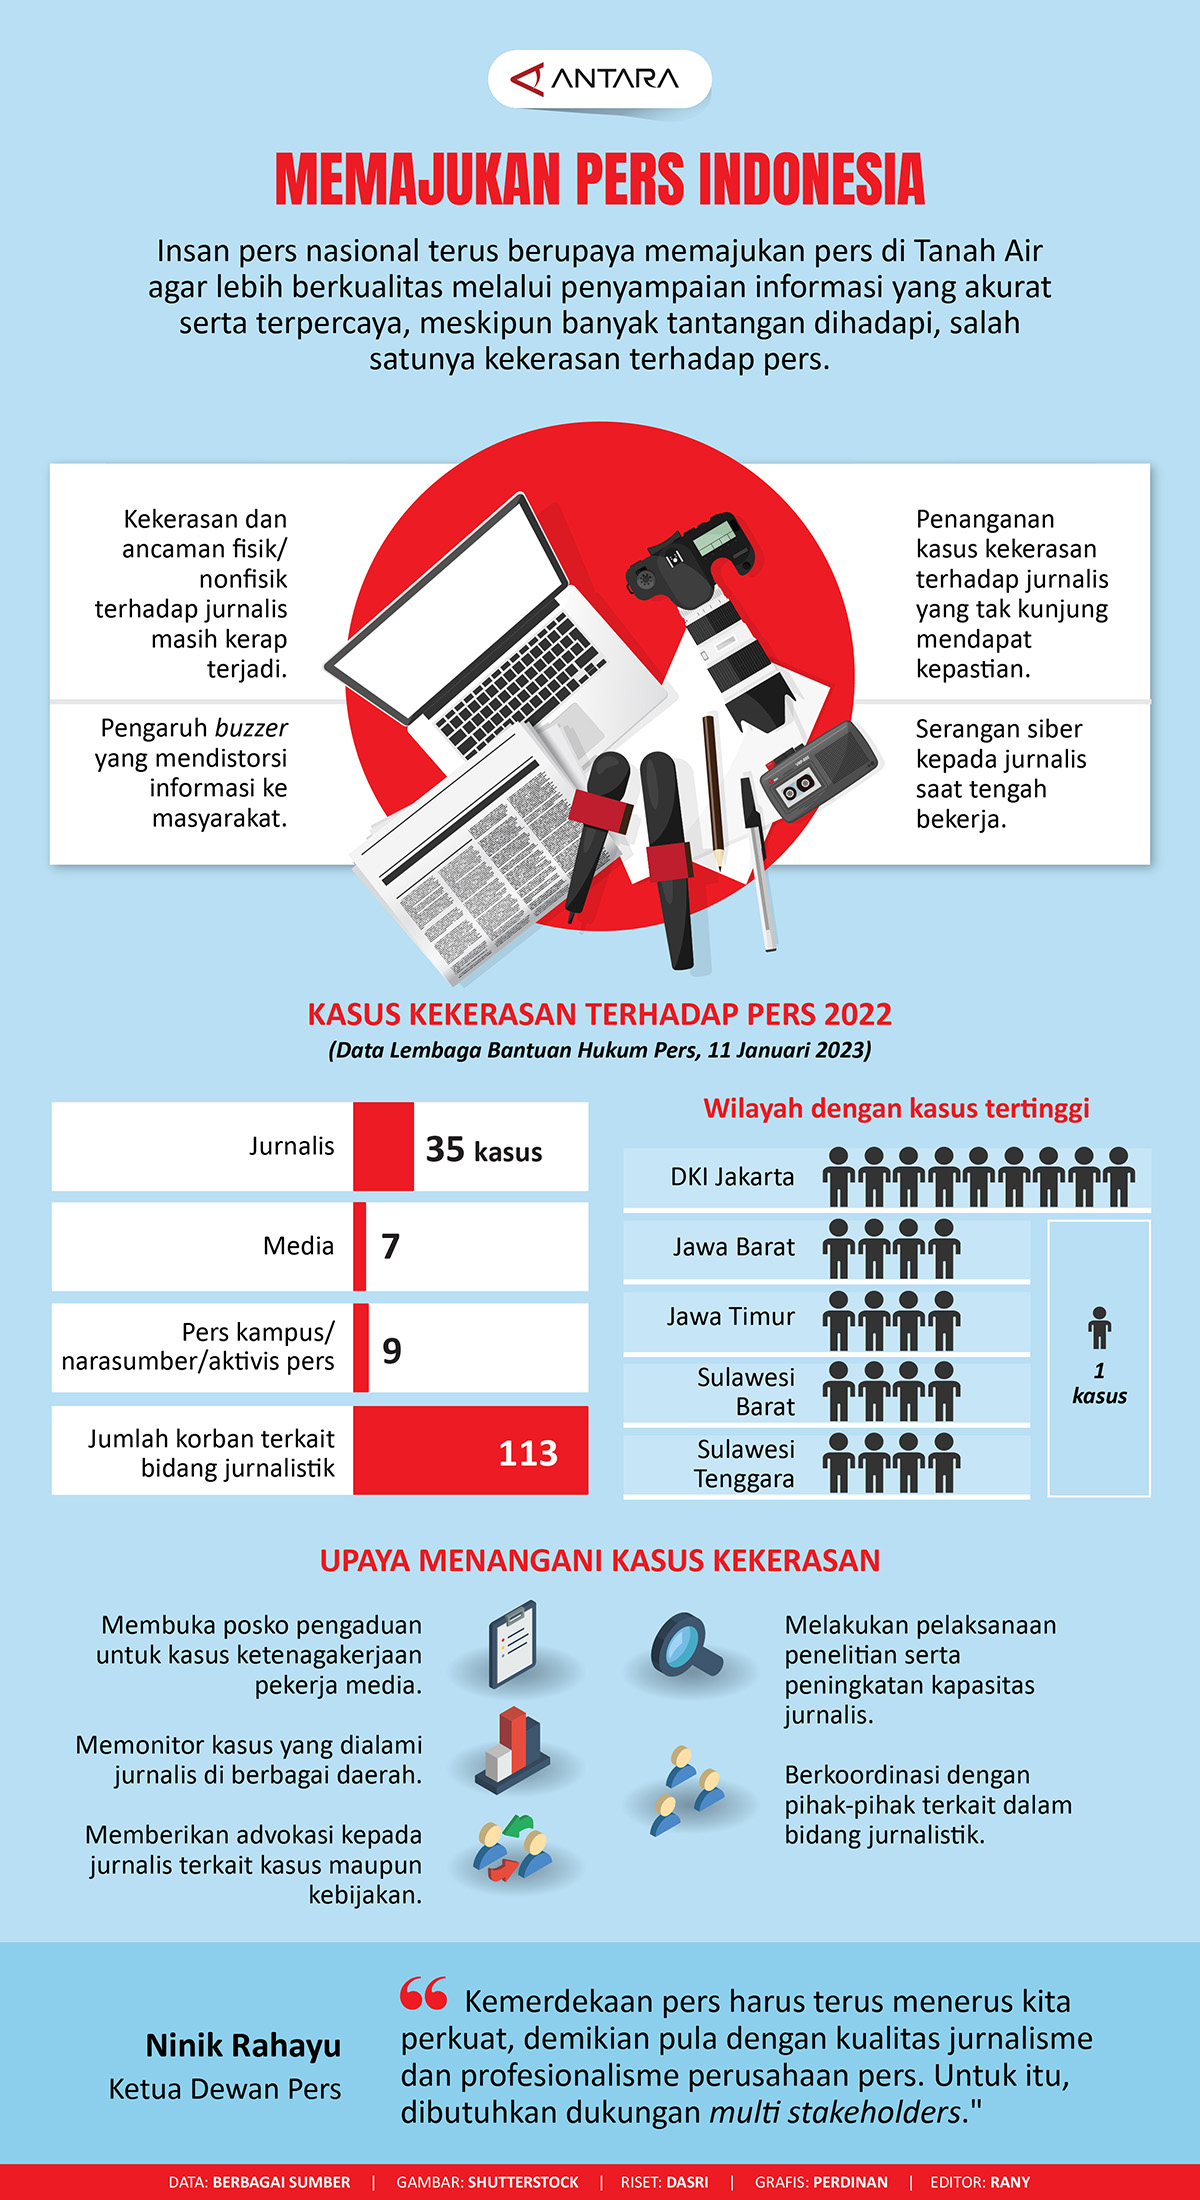 Memajukan pers Indonesia